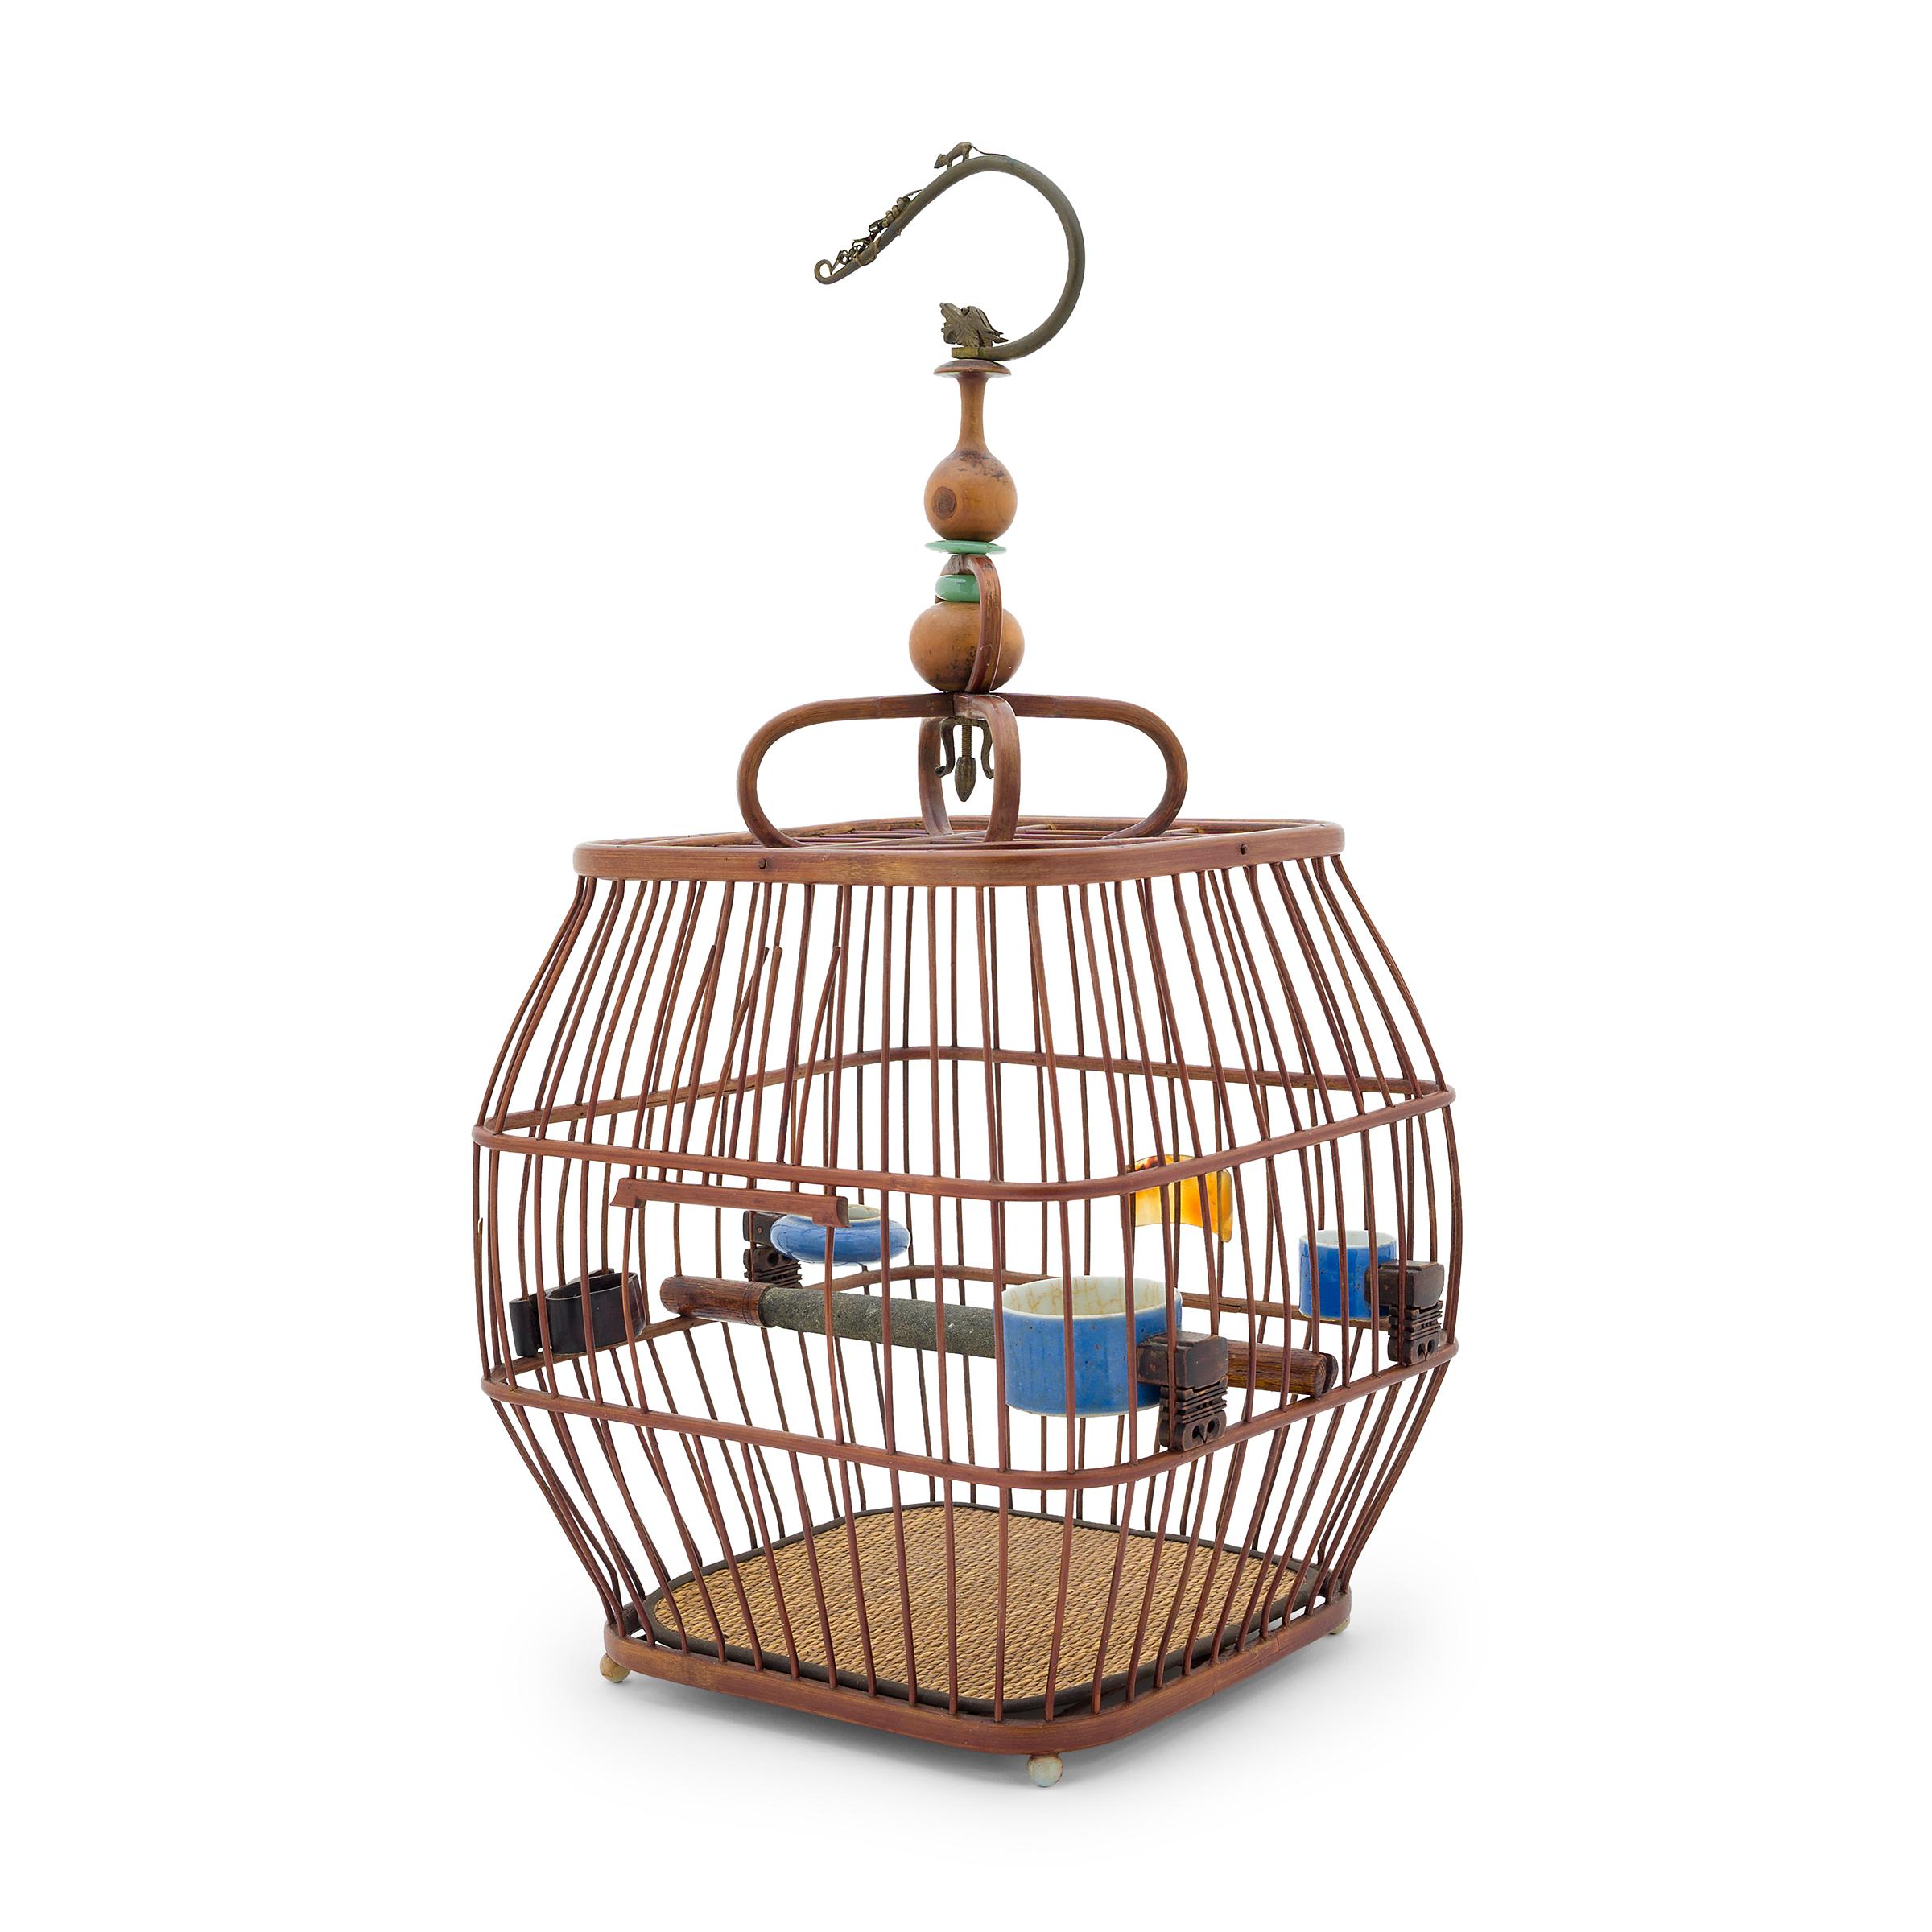 Cette charmante cage à oiseaux en forme de tonneau abritait autrefois l'oiseau chanteur d'un aristocrate de la dynastie Qing. L'élevage d'oiseaux était un passe-temps populaire pendant toute la dynastie Qing et a inspiré sa propre culture